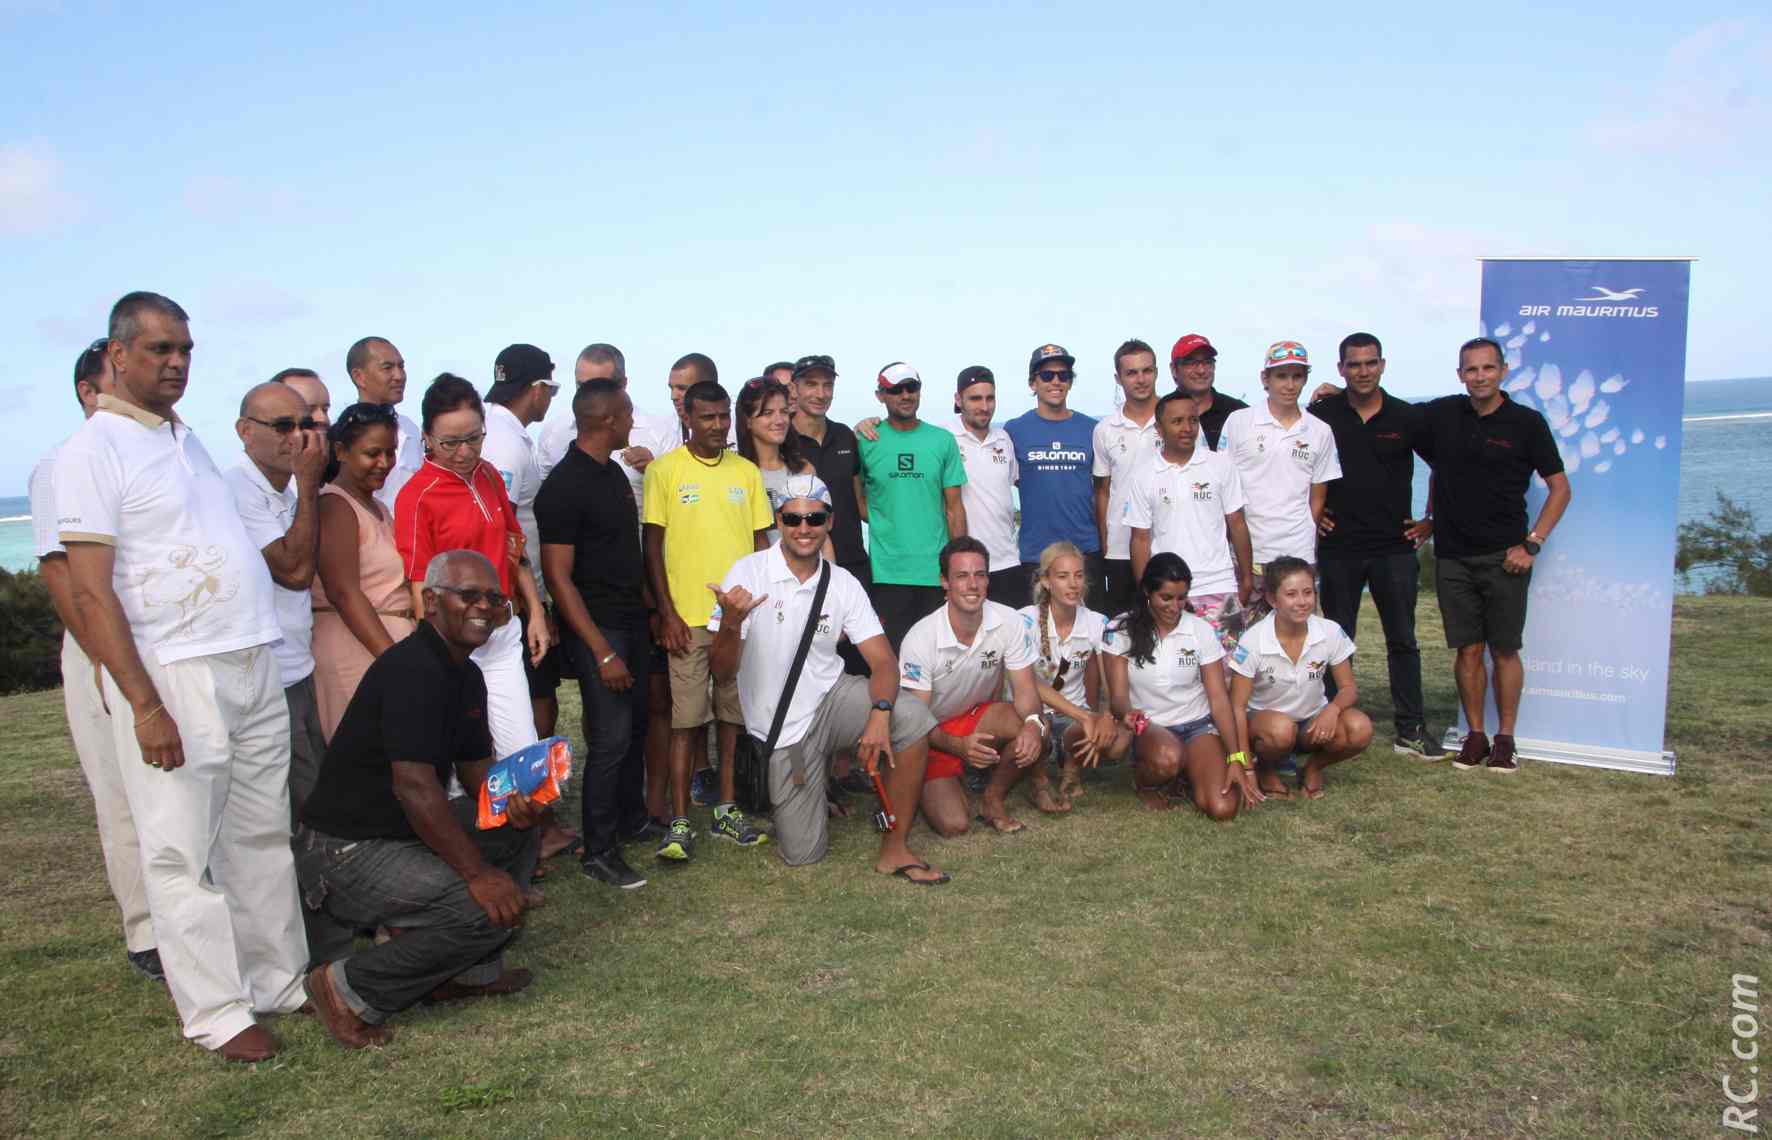 Les organisateurs et leurs invités dont faisaient partie les des étudiants de l'université de la Réunion.